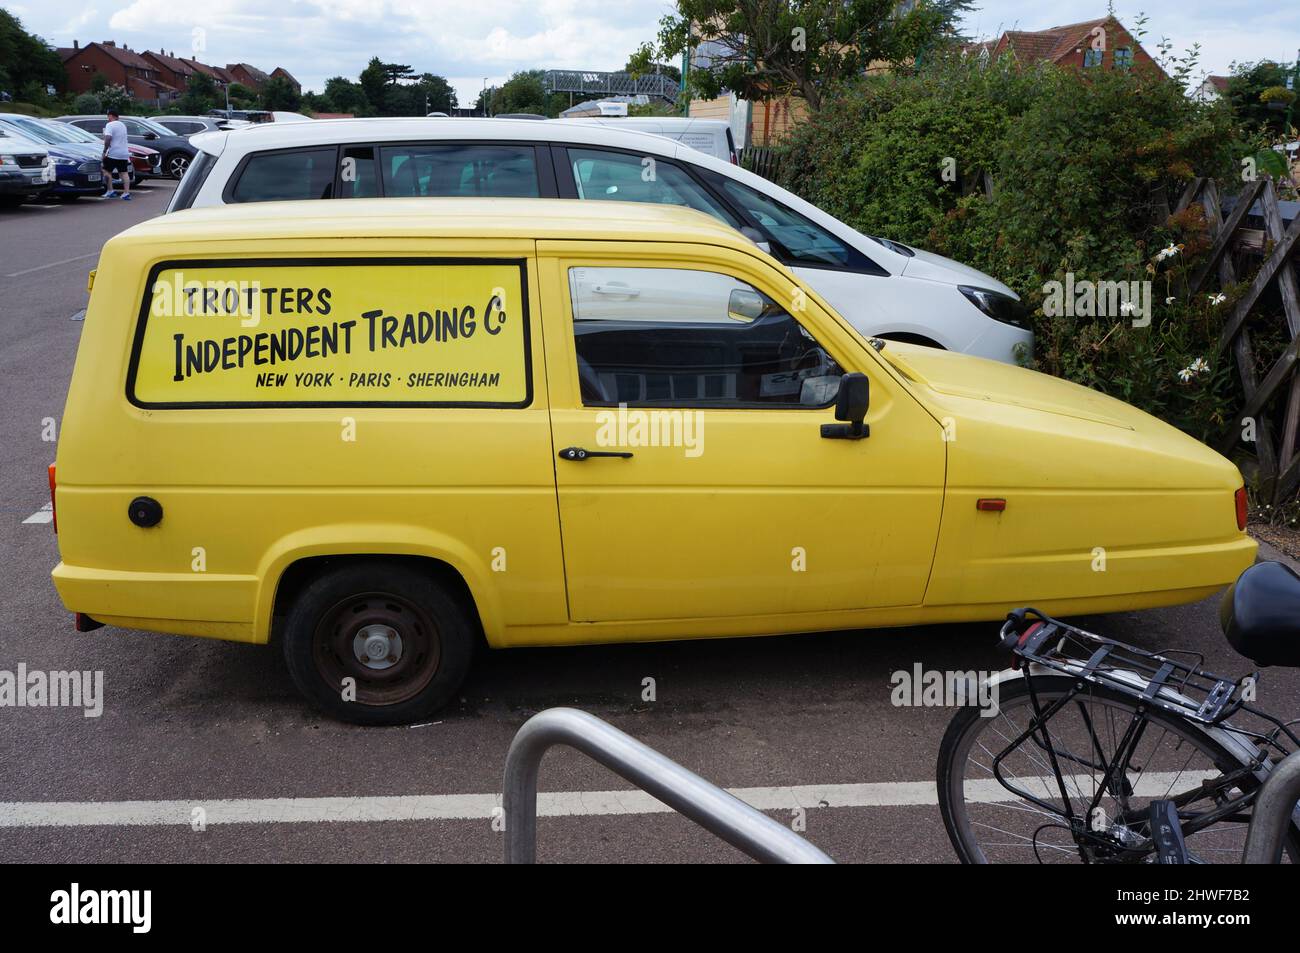 Seitenansicht des Yellow Reliant Robin 3 Wheeler Van auf einem Parkplatz mit Trotter`s Independent Trading auf der Seite Stockfoto